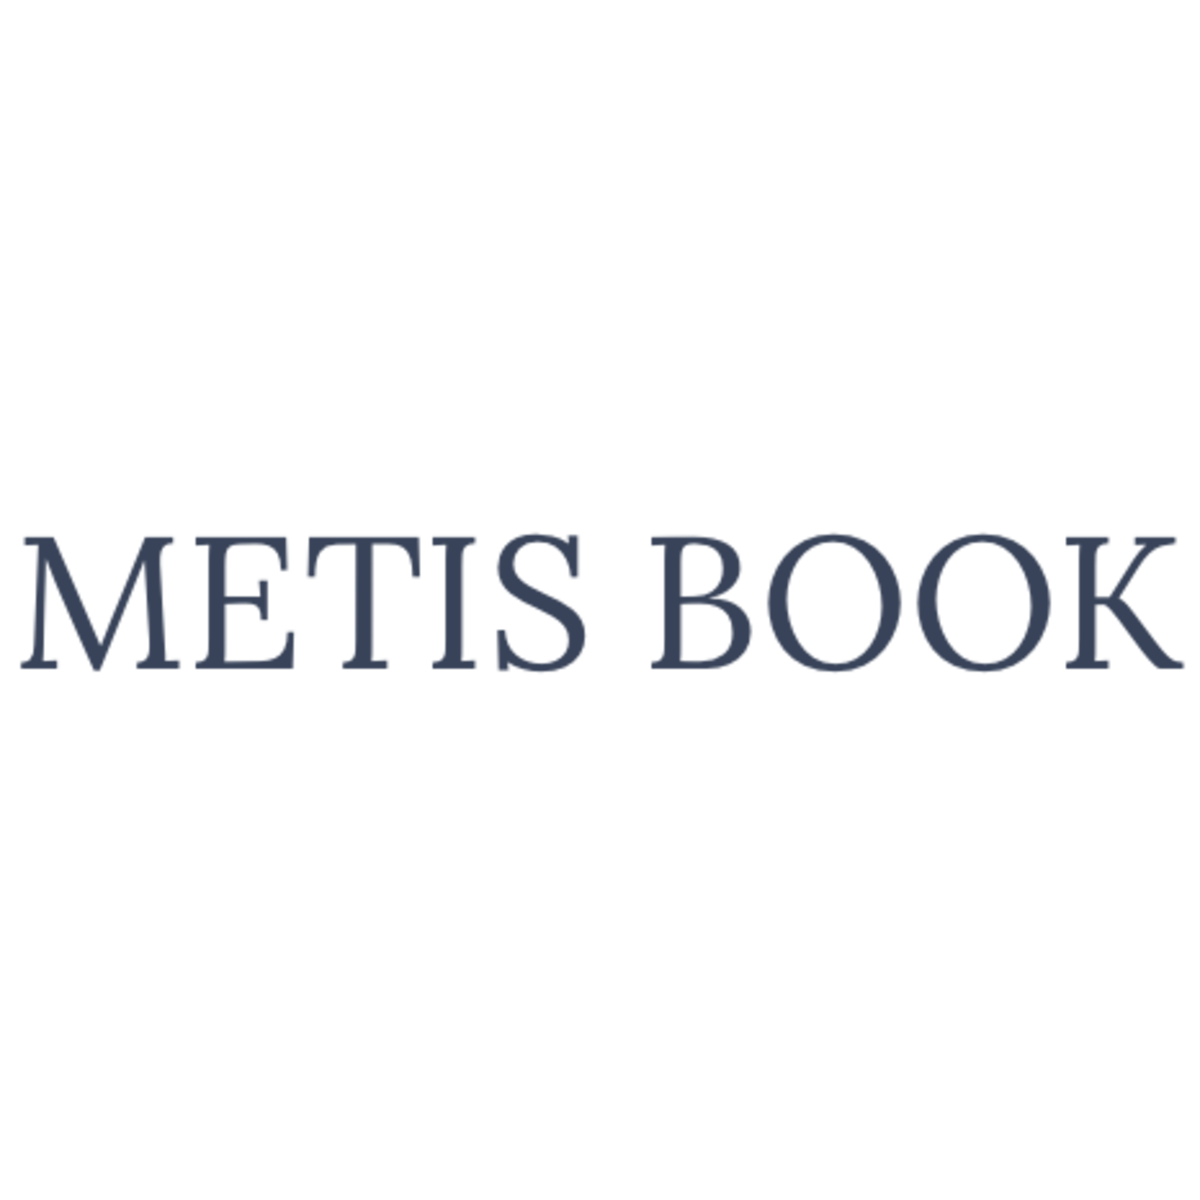 METIS BOOK